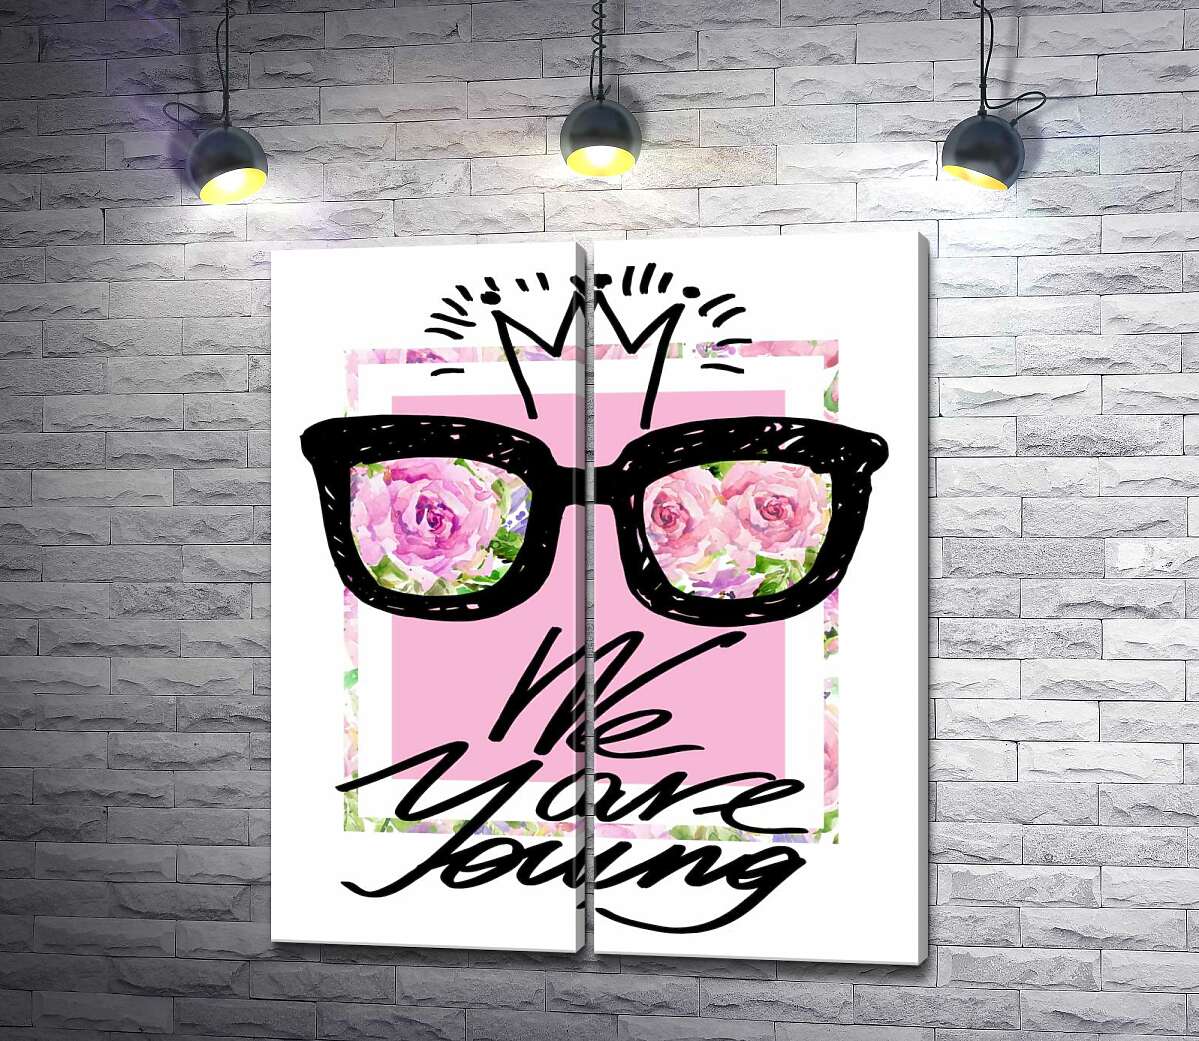 модульная картина Черные очки с короной над надписью "we are young"